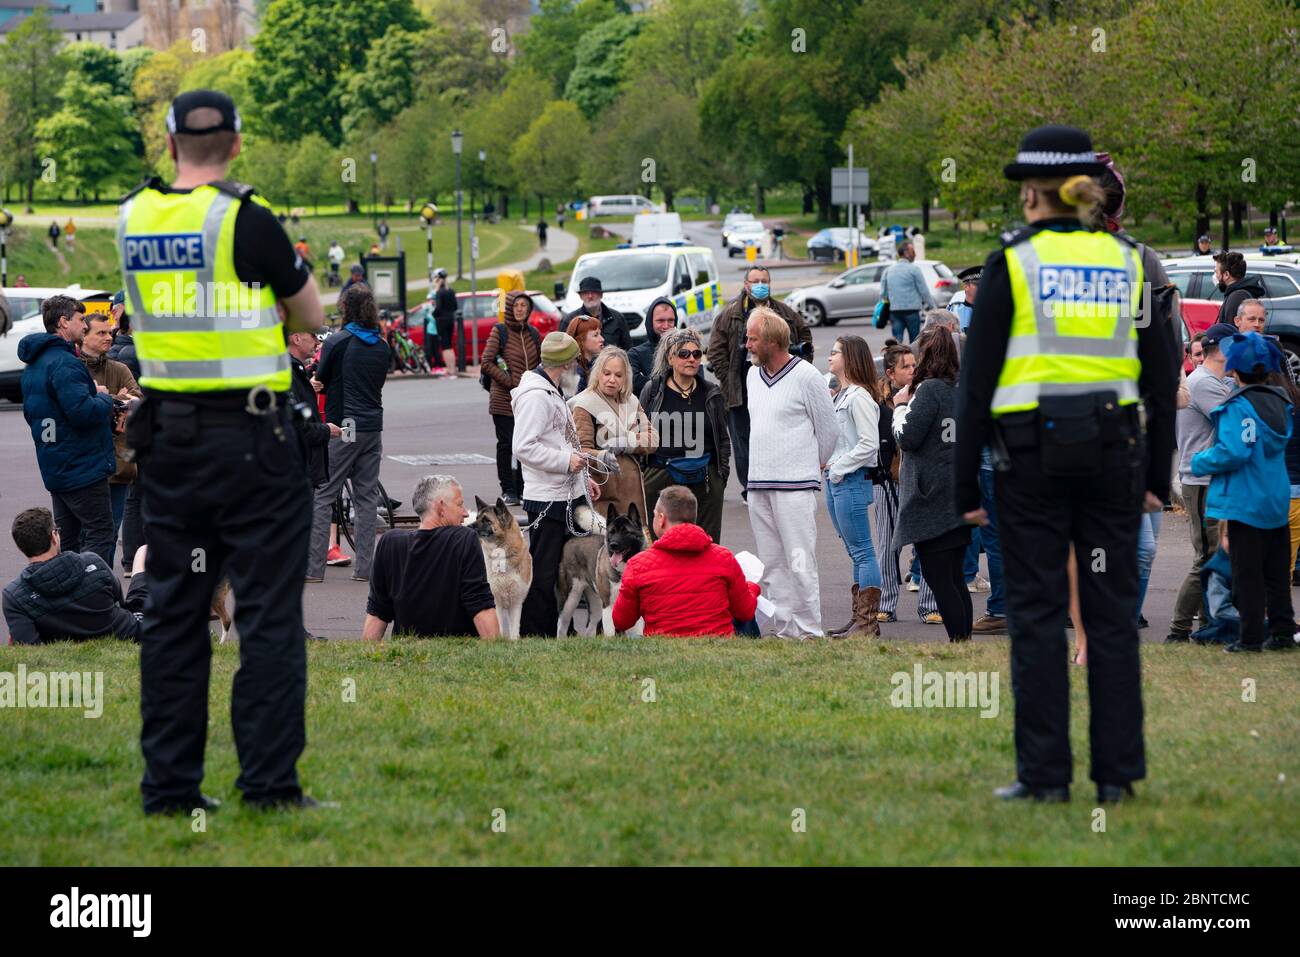 Edimburgo, Escocia, Reino Unido. La policía vigila a un pequeño grupo de personas en Holyrood Park. Es posible que uno o dos miembros del público formaran parte de una protesta contra el cierre de la cárcel en el parque que fue promovida en Facebook esta semana. Sin embargo, no hay protestas a gran escala en el parque a la hora de inicio prevista. Iain Masterton/Alamy Live News Foto de stock